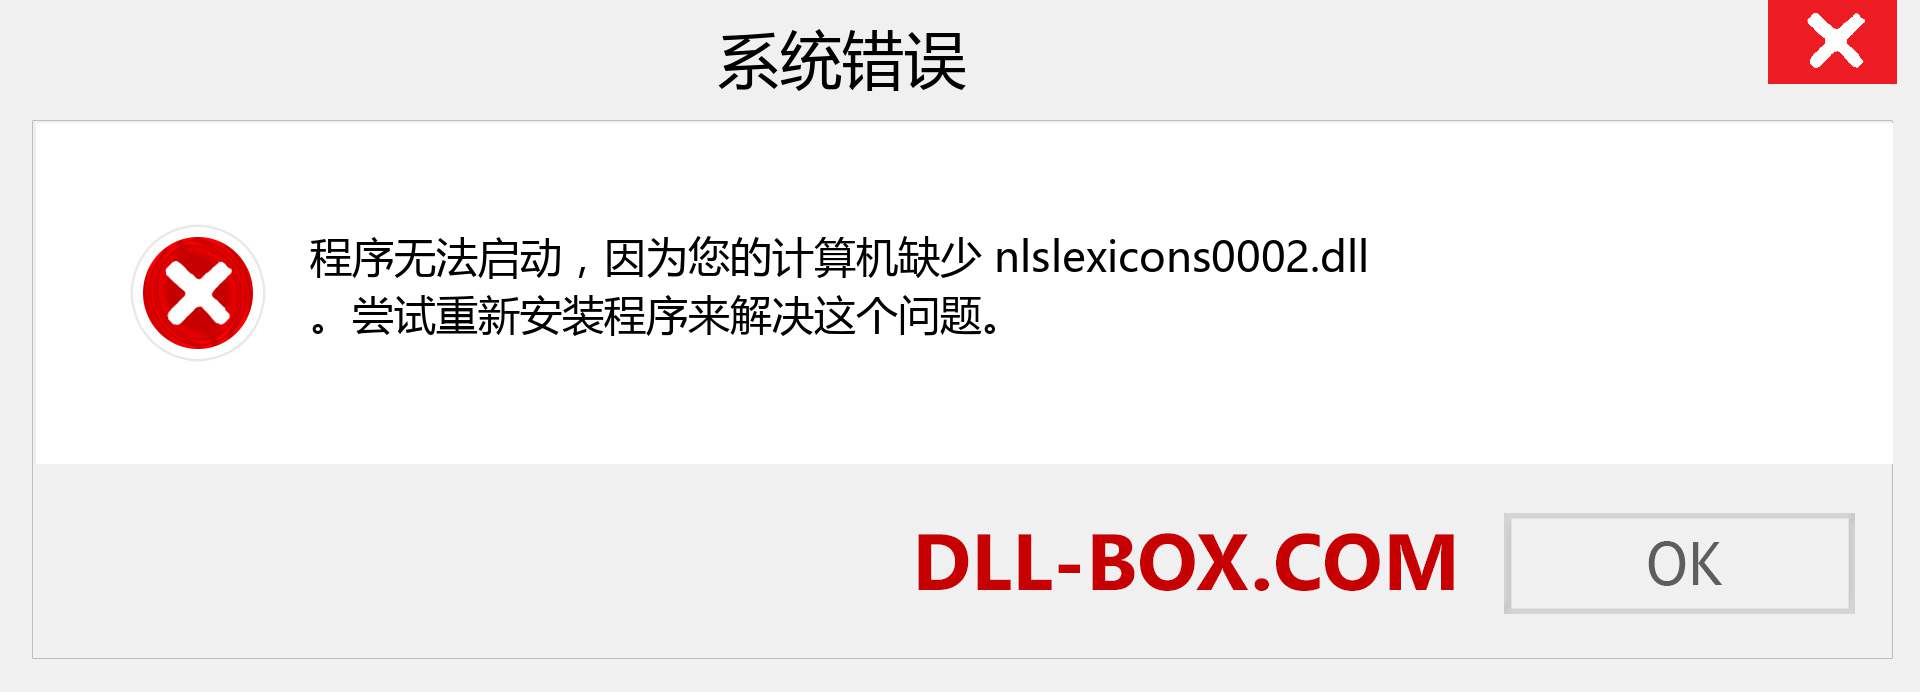 nlslexicons0002.dll 文件丢失？。 适用于 Windows 7、8、10 的下载 - 修复 Windows、照片、图像上的 nlslexicons0002 dll 丢失错误